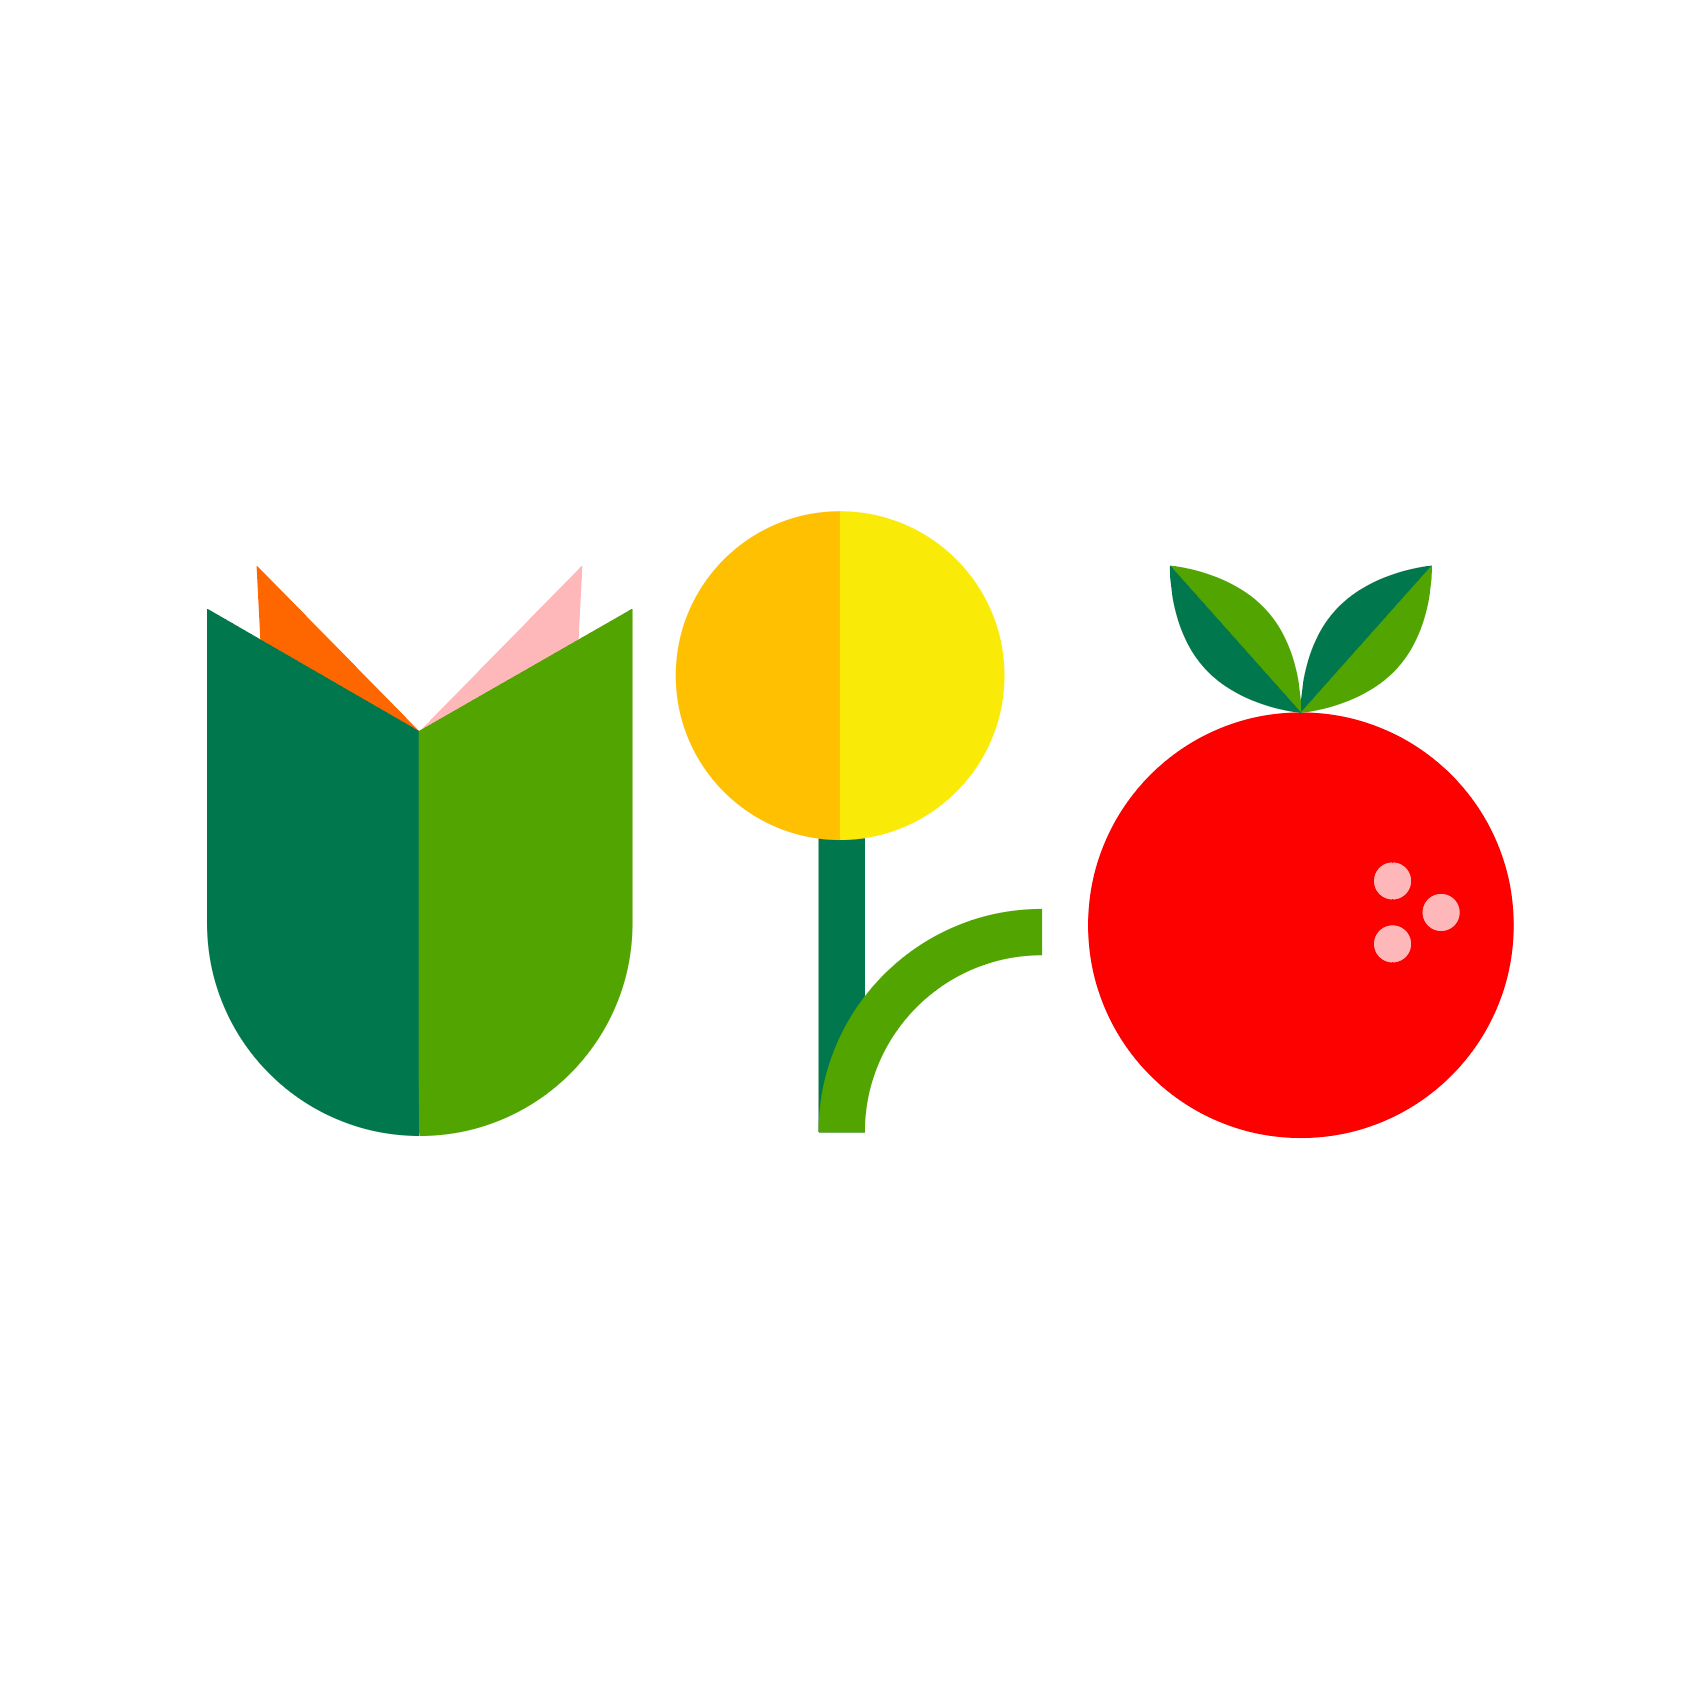 Bildet kan inneholde: skrift, frukt, naturlig mat, logo, sirkel.